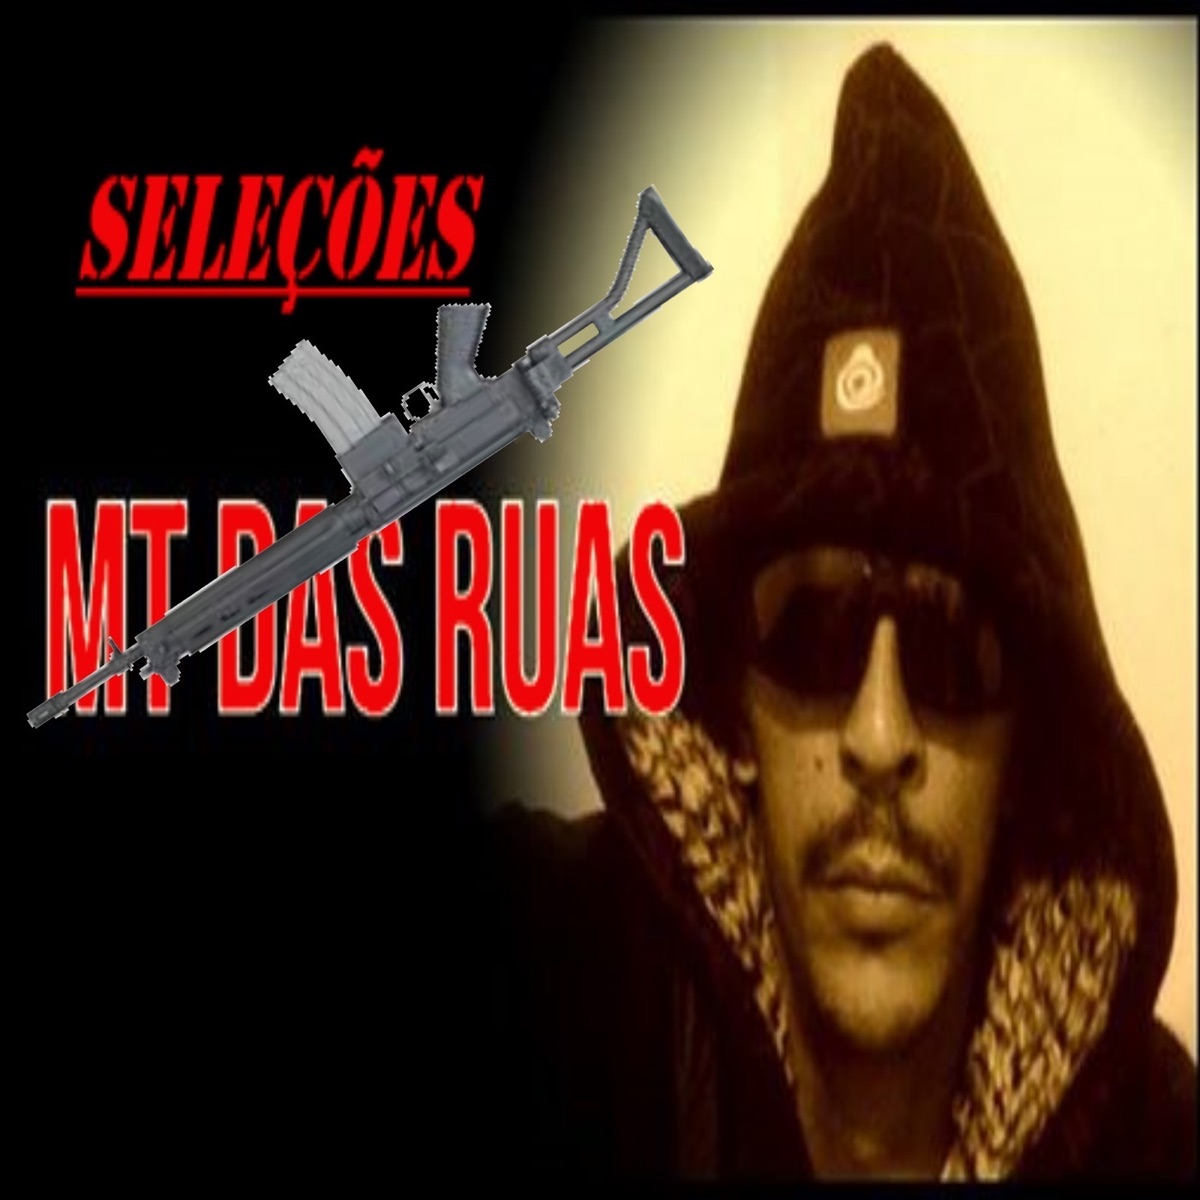 Dança das Armas - Single - Album by Mt Das Ruas - Apple Music